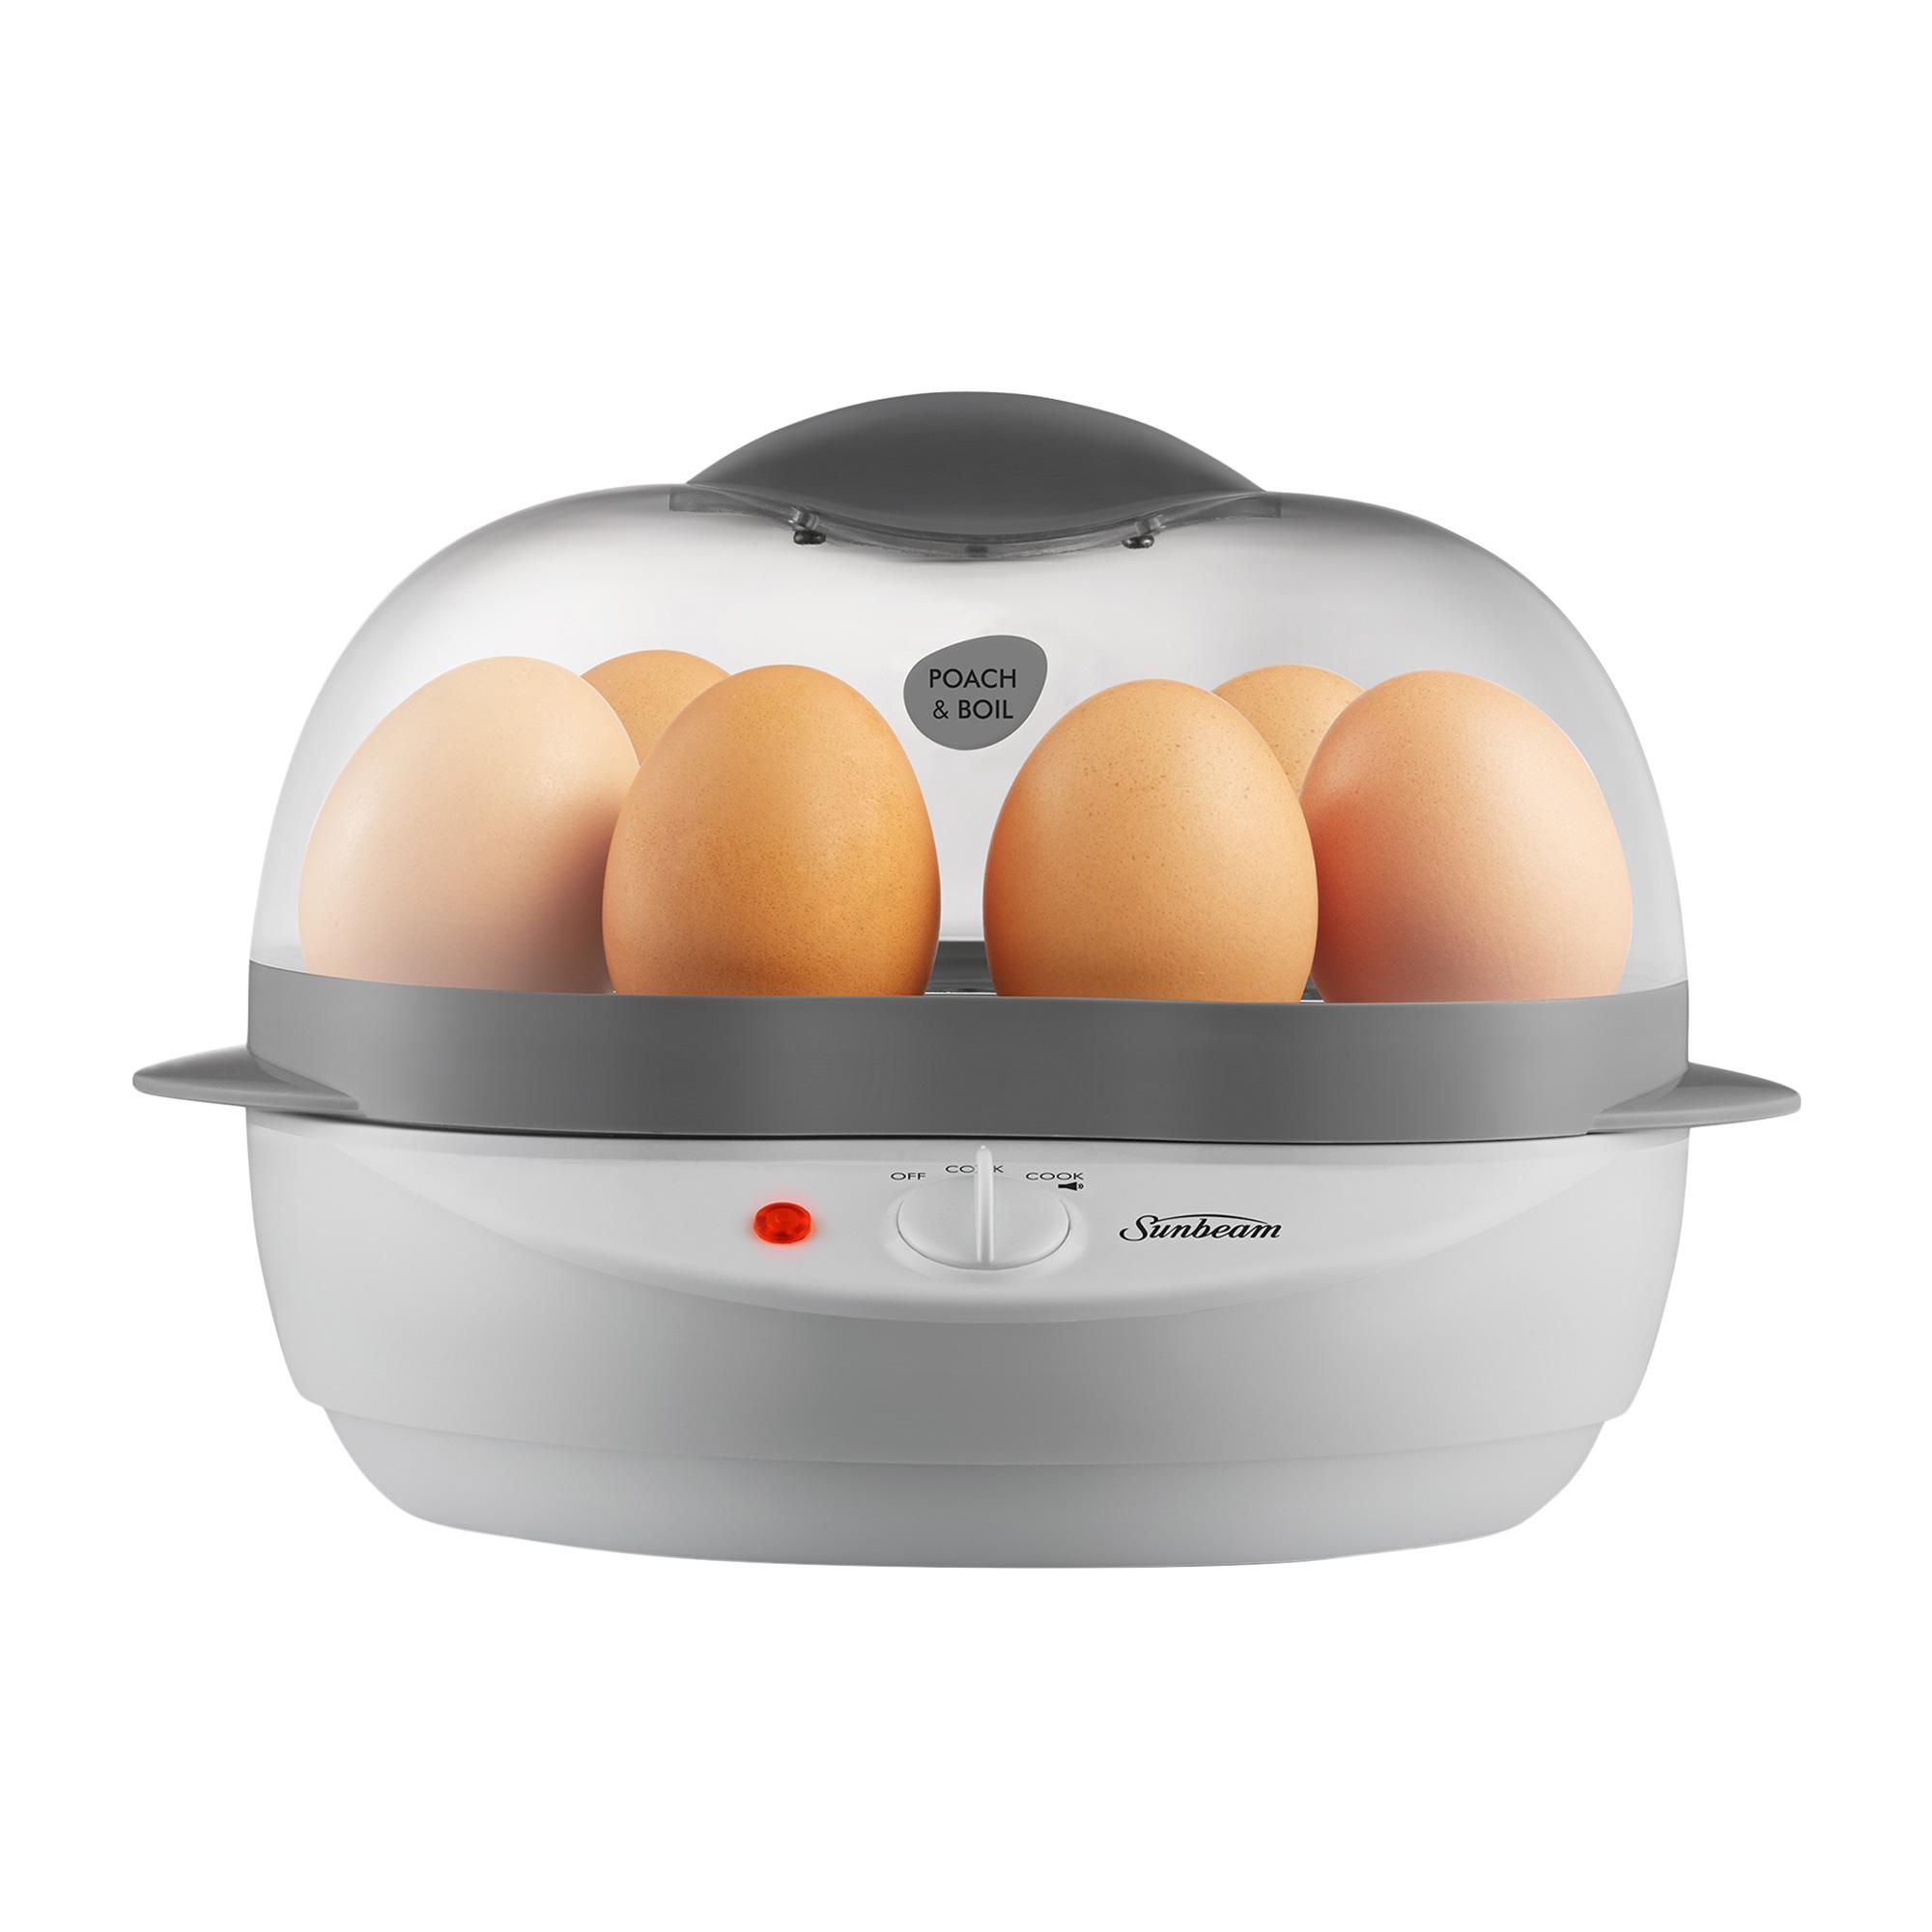 Sunbeam Poach & Boil EC1300 Egg Cooker Image 3